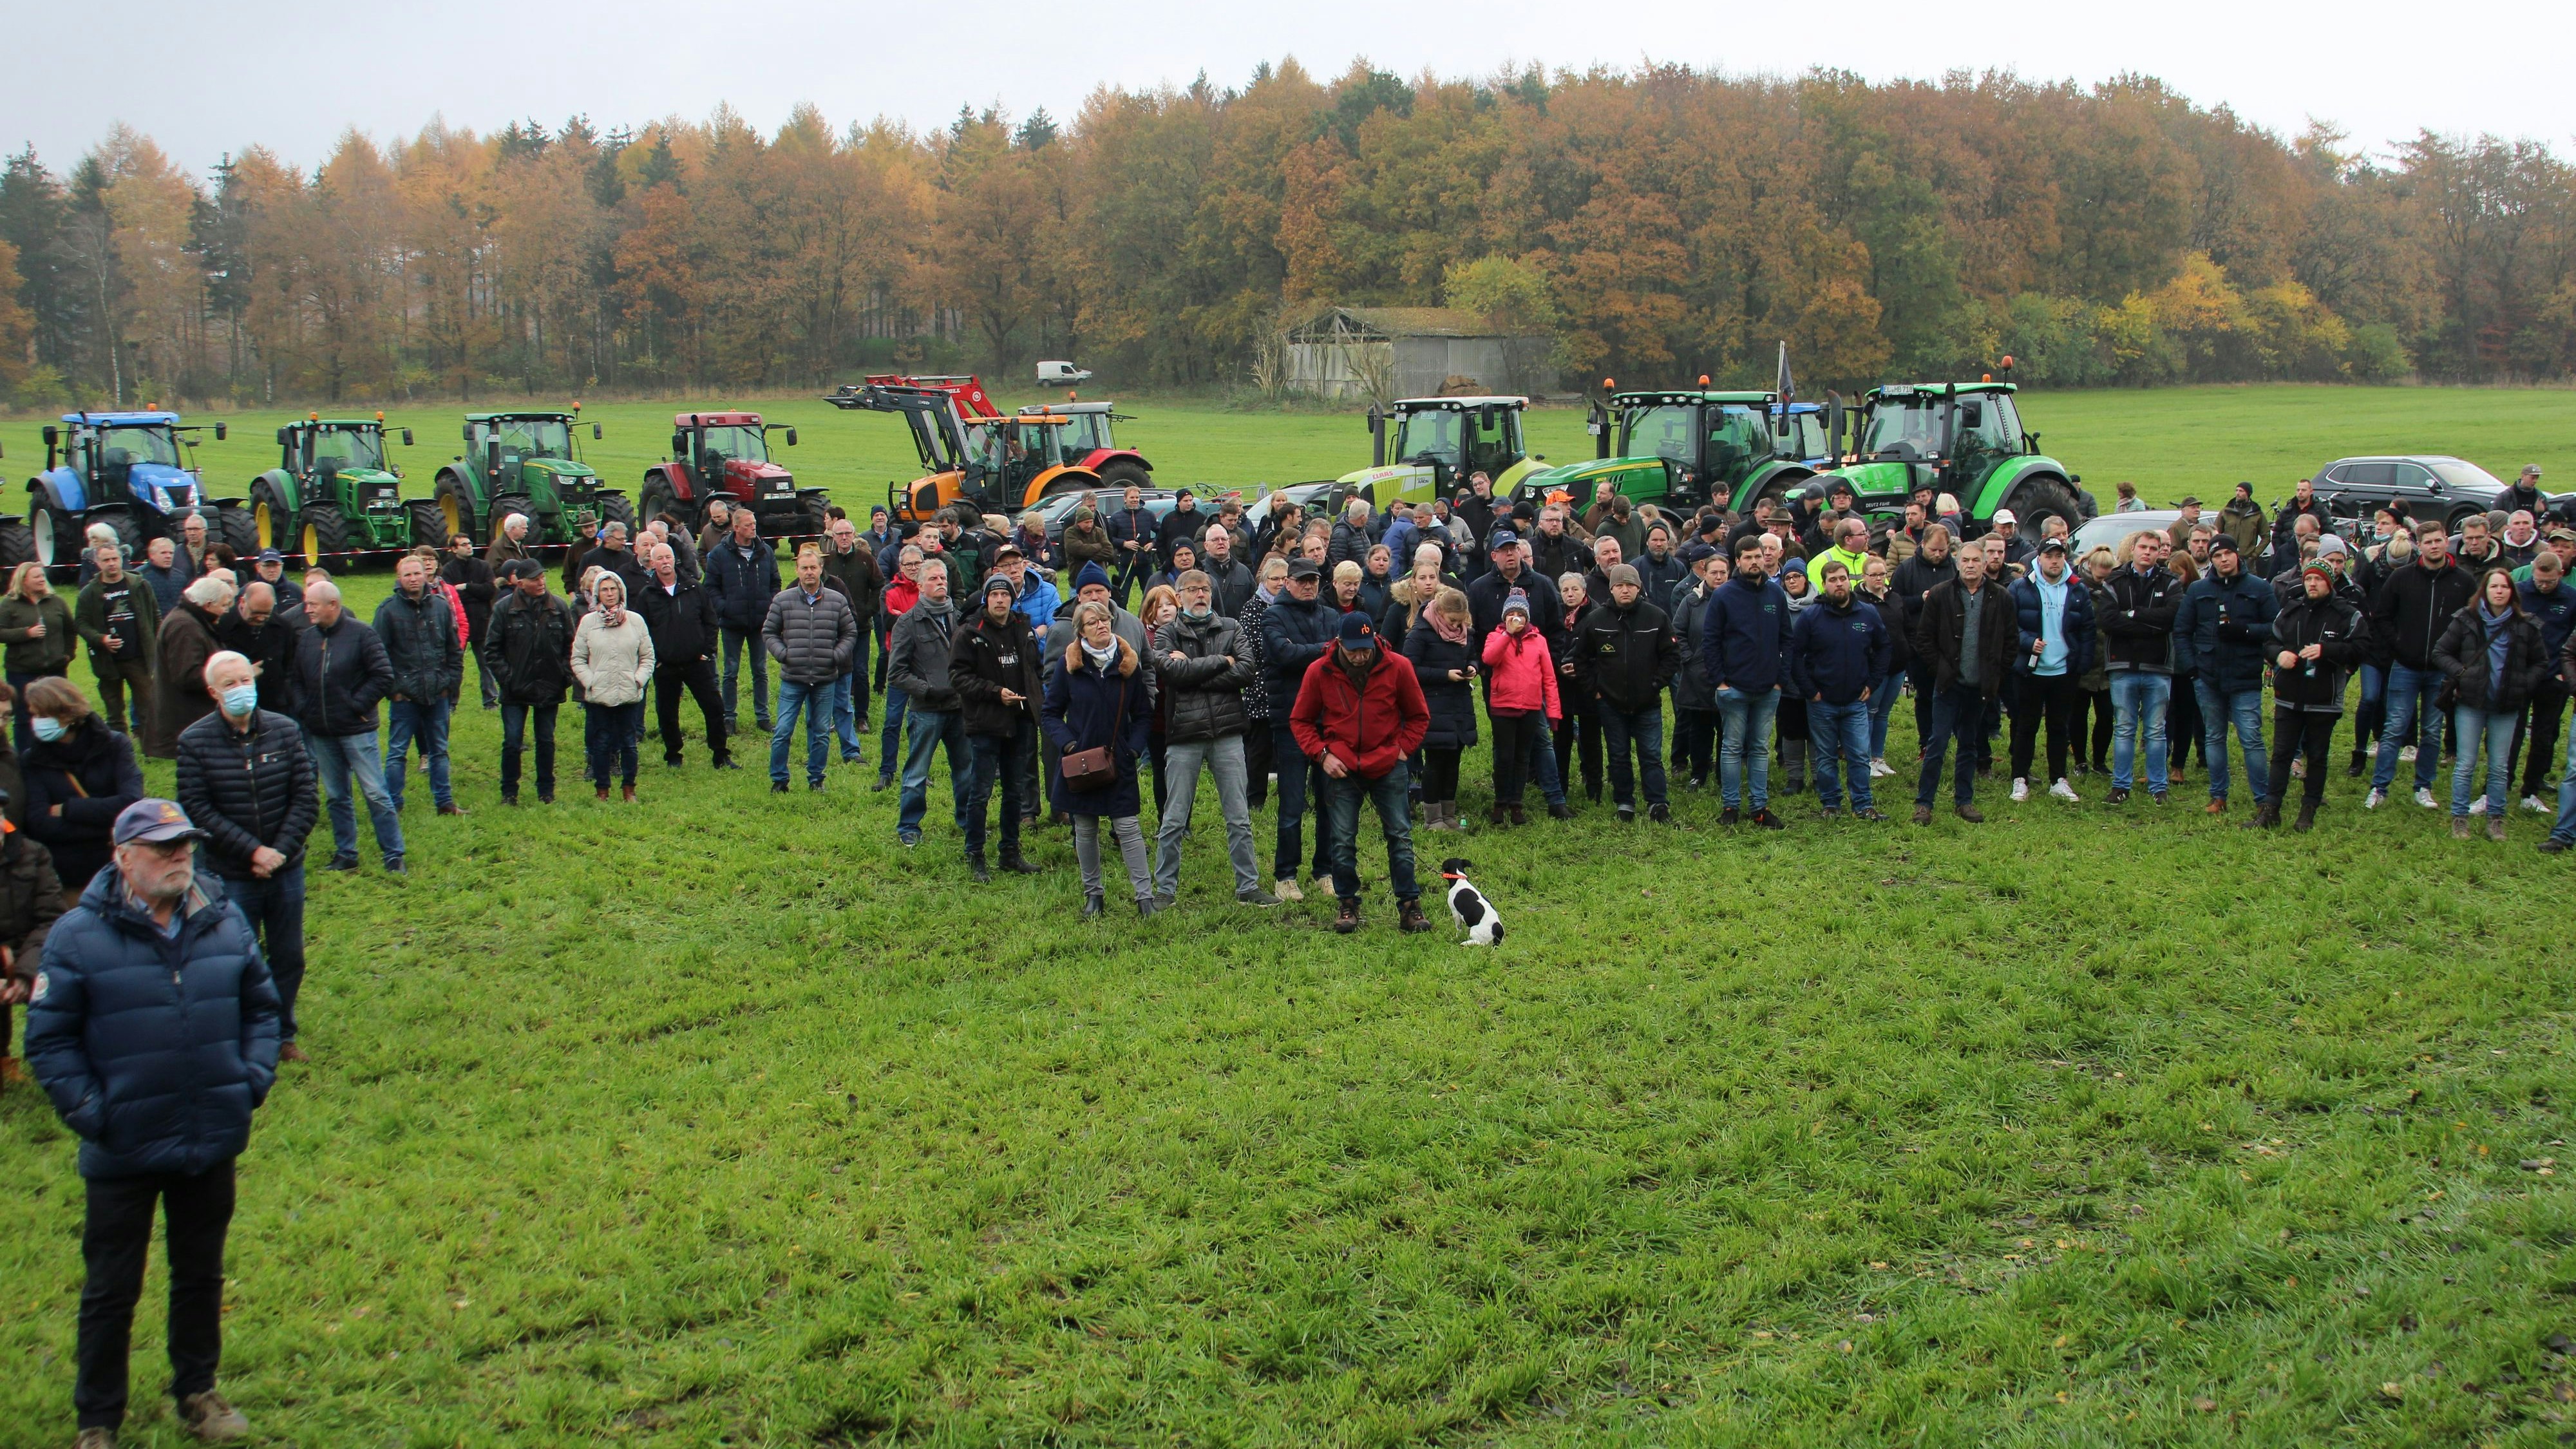 Protest auf der Wiese: Rund 400 Schäferinnen, Schäfer und Landwirte hielten in Vrees eine Mahnwache ab. Foto: Alwin Wessels